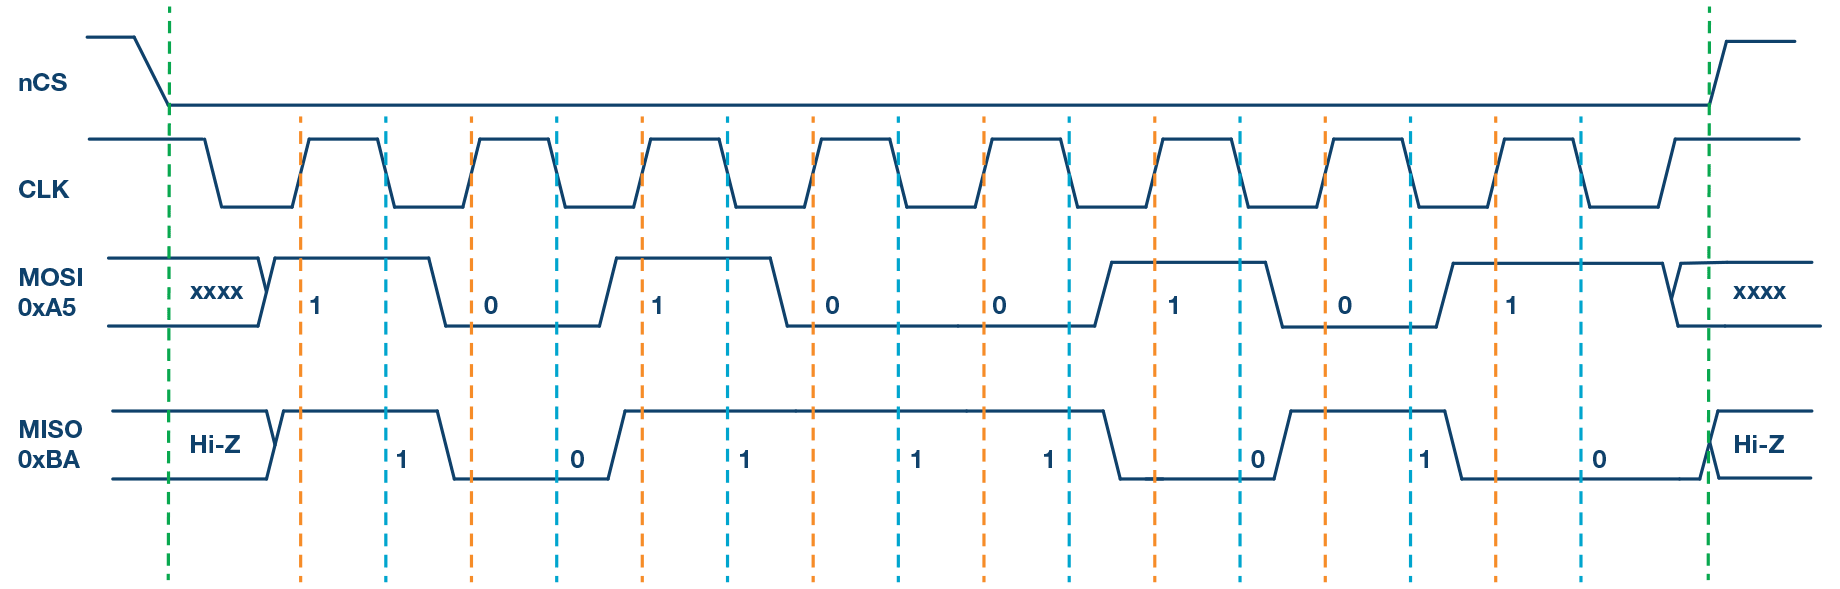 图5. SPI模式3，CPOL = 1，CPHA = 0：CLK空闲状态 = 高电平，数据在上升沿采样，并在下降沿移出